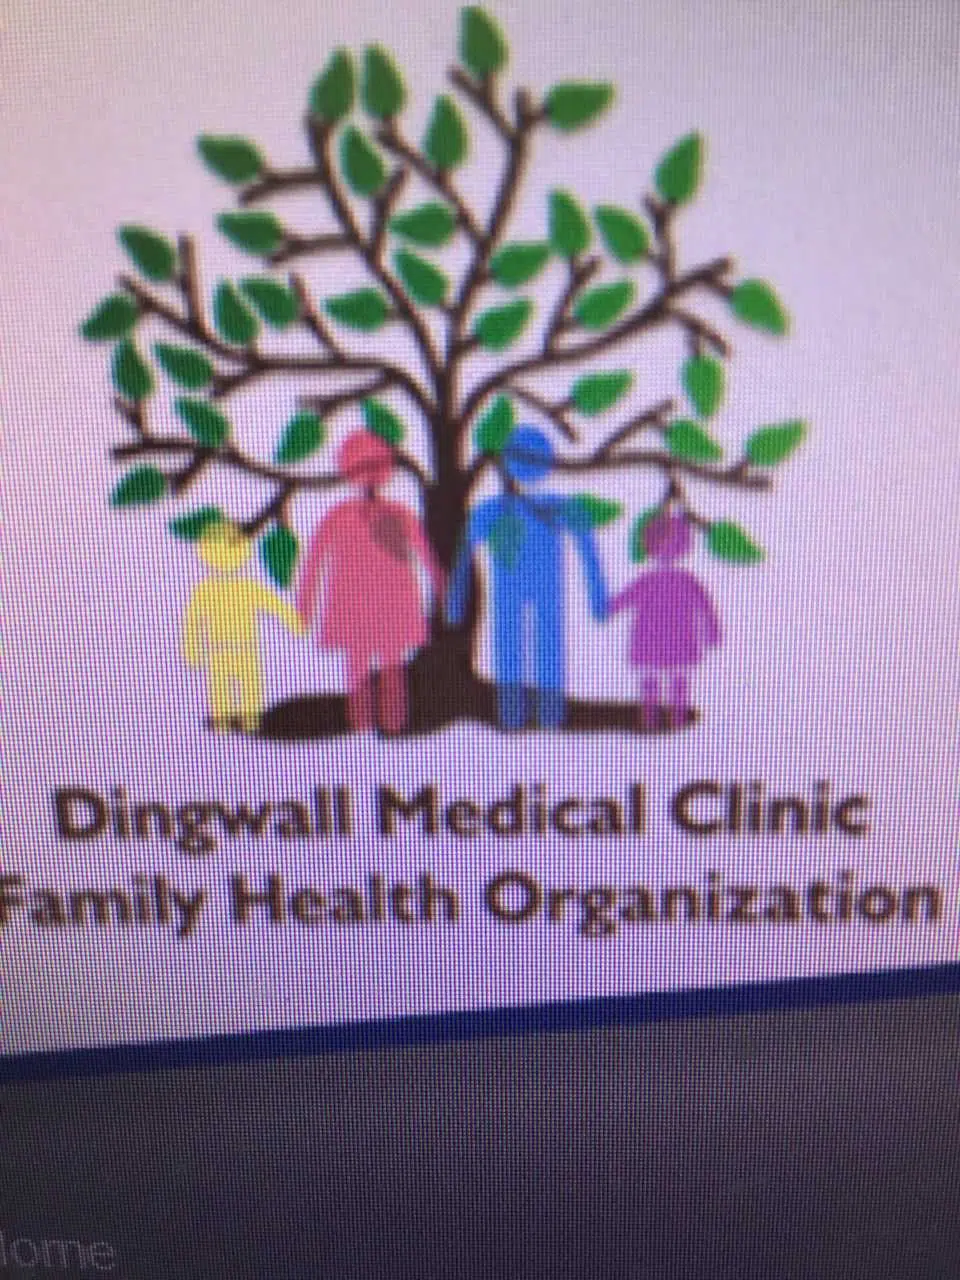 Dingwall Medical Lab Closing